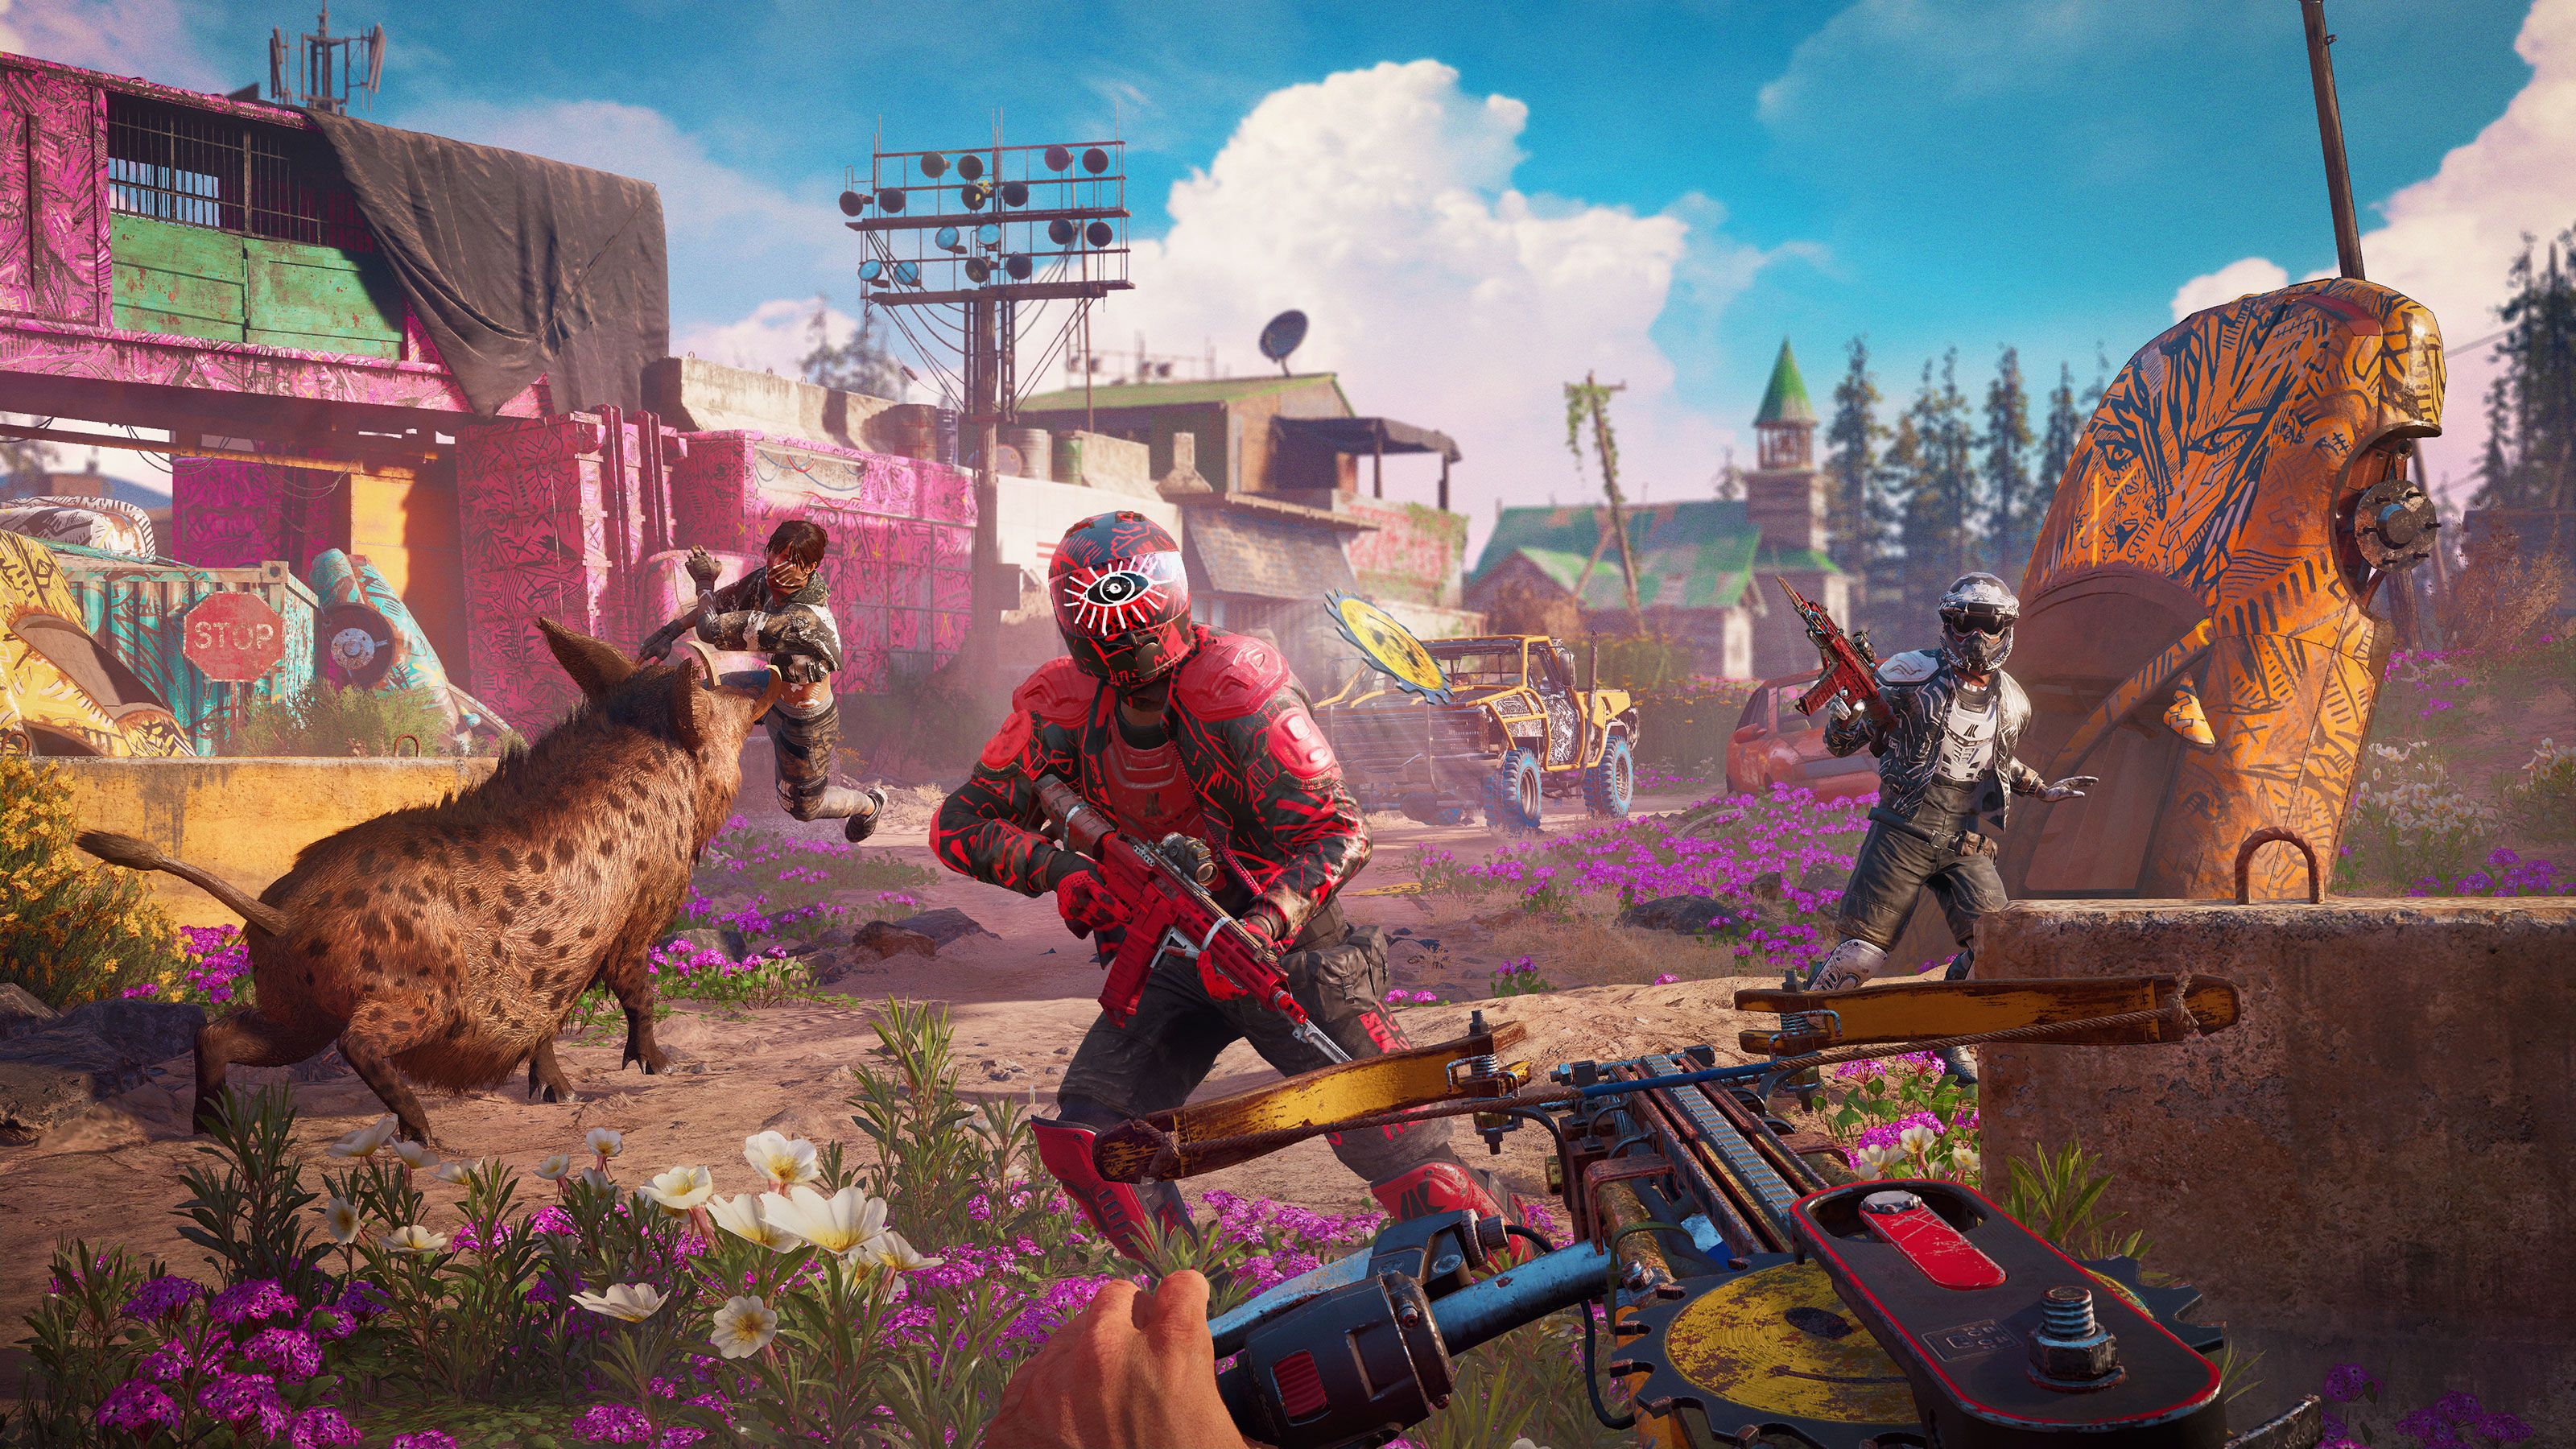 Ubisoft revela requisitos do futuro Far Cry 6